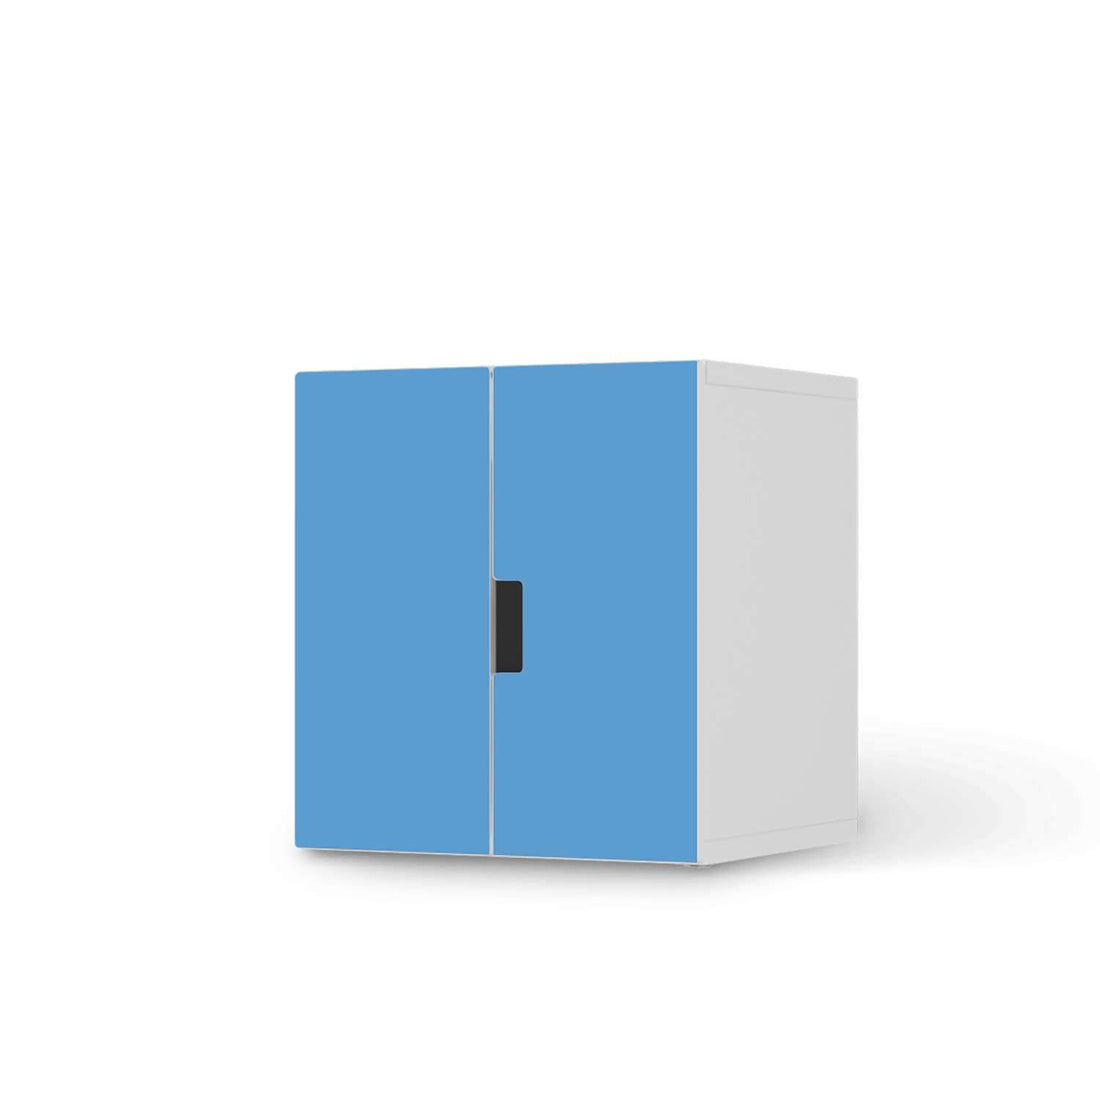 Selbstklebende Folie Blau Light - IKEA Stuva Schrank - 2 kleine Türen  - weiss